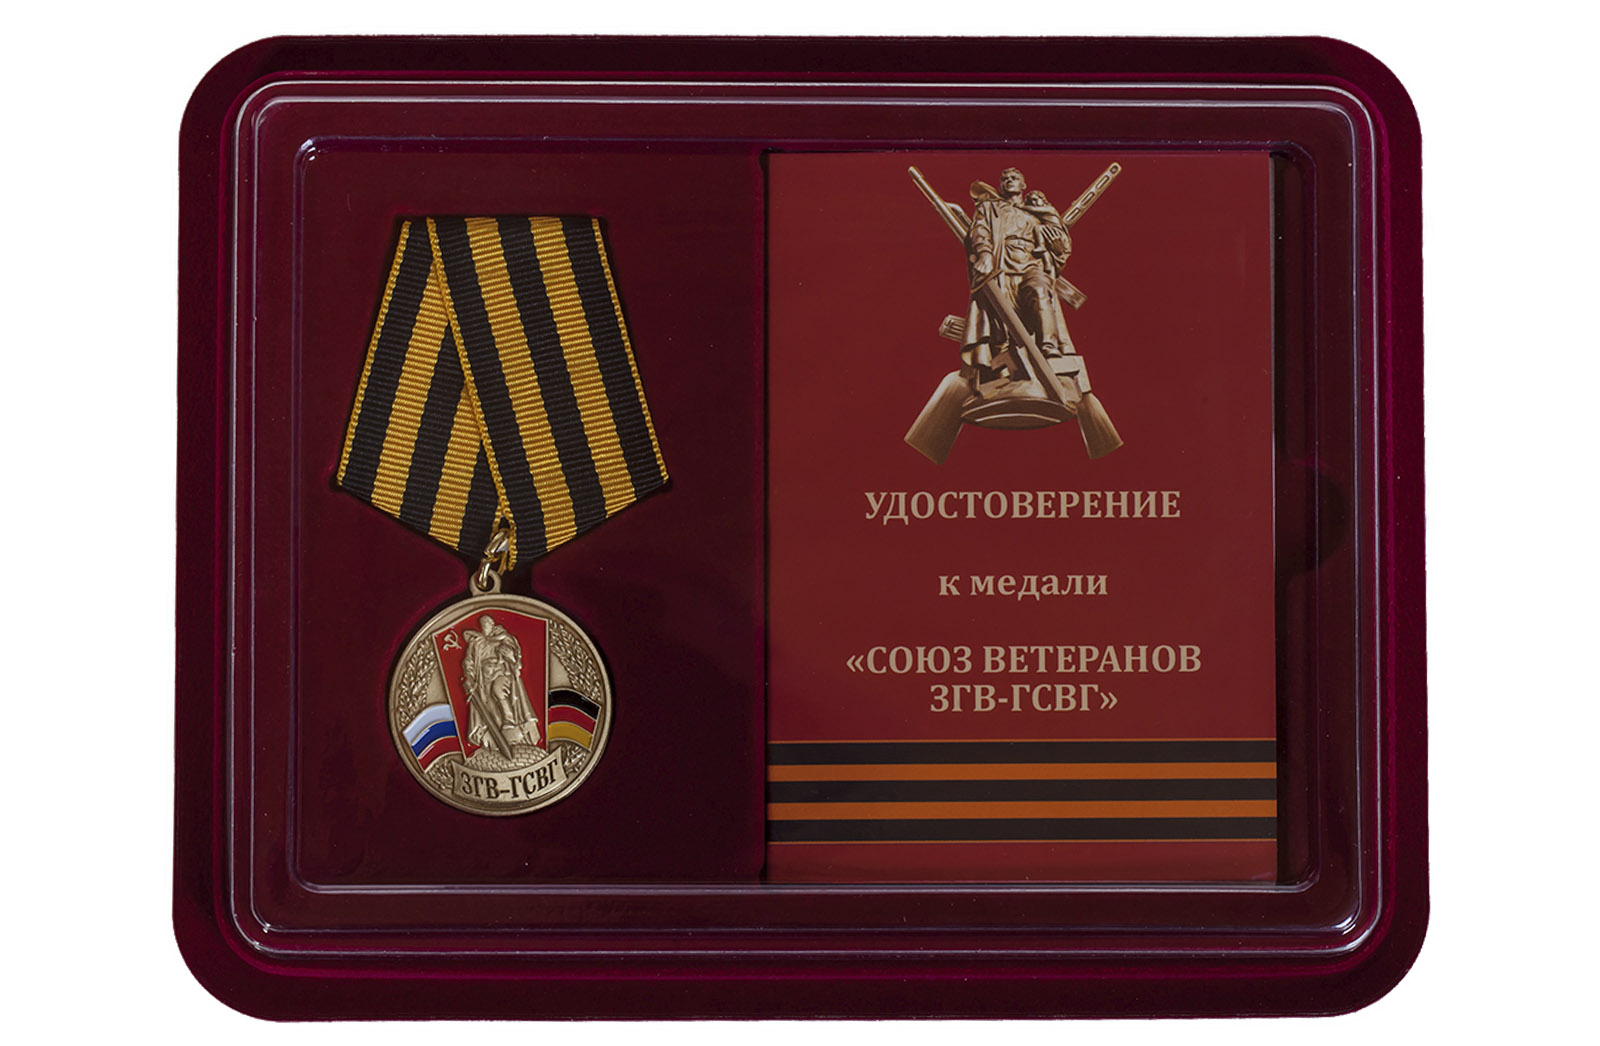 Купить медаль Союз ветеранов ЗГВ-ГСВГ в футляре с удостоверением по сниженной цене